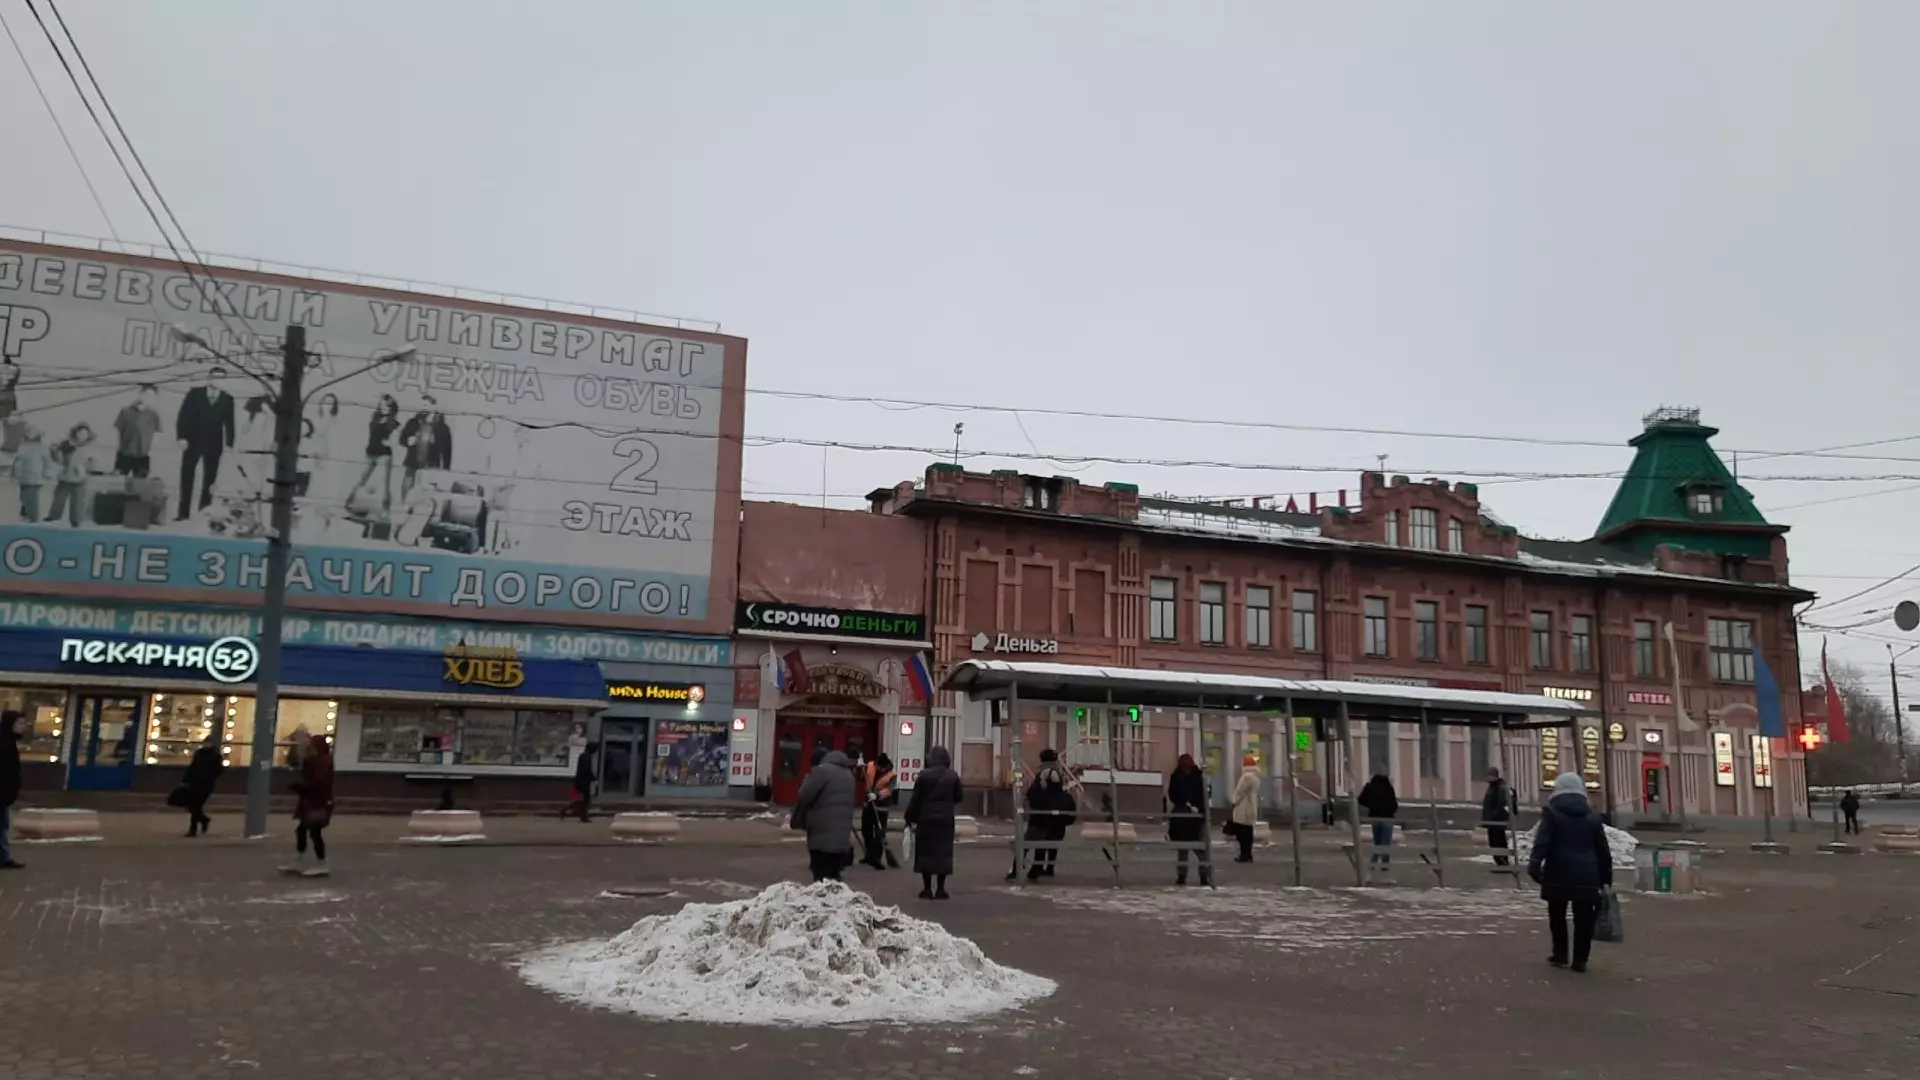 Ларьки у «Шайбы» начали сносить в Нижнем Новгороде